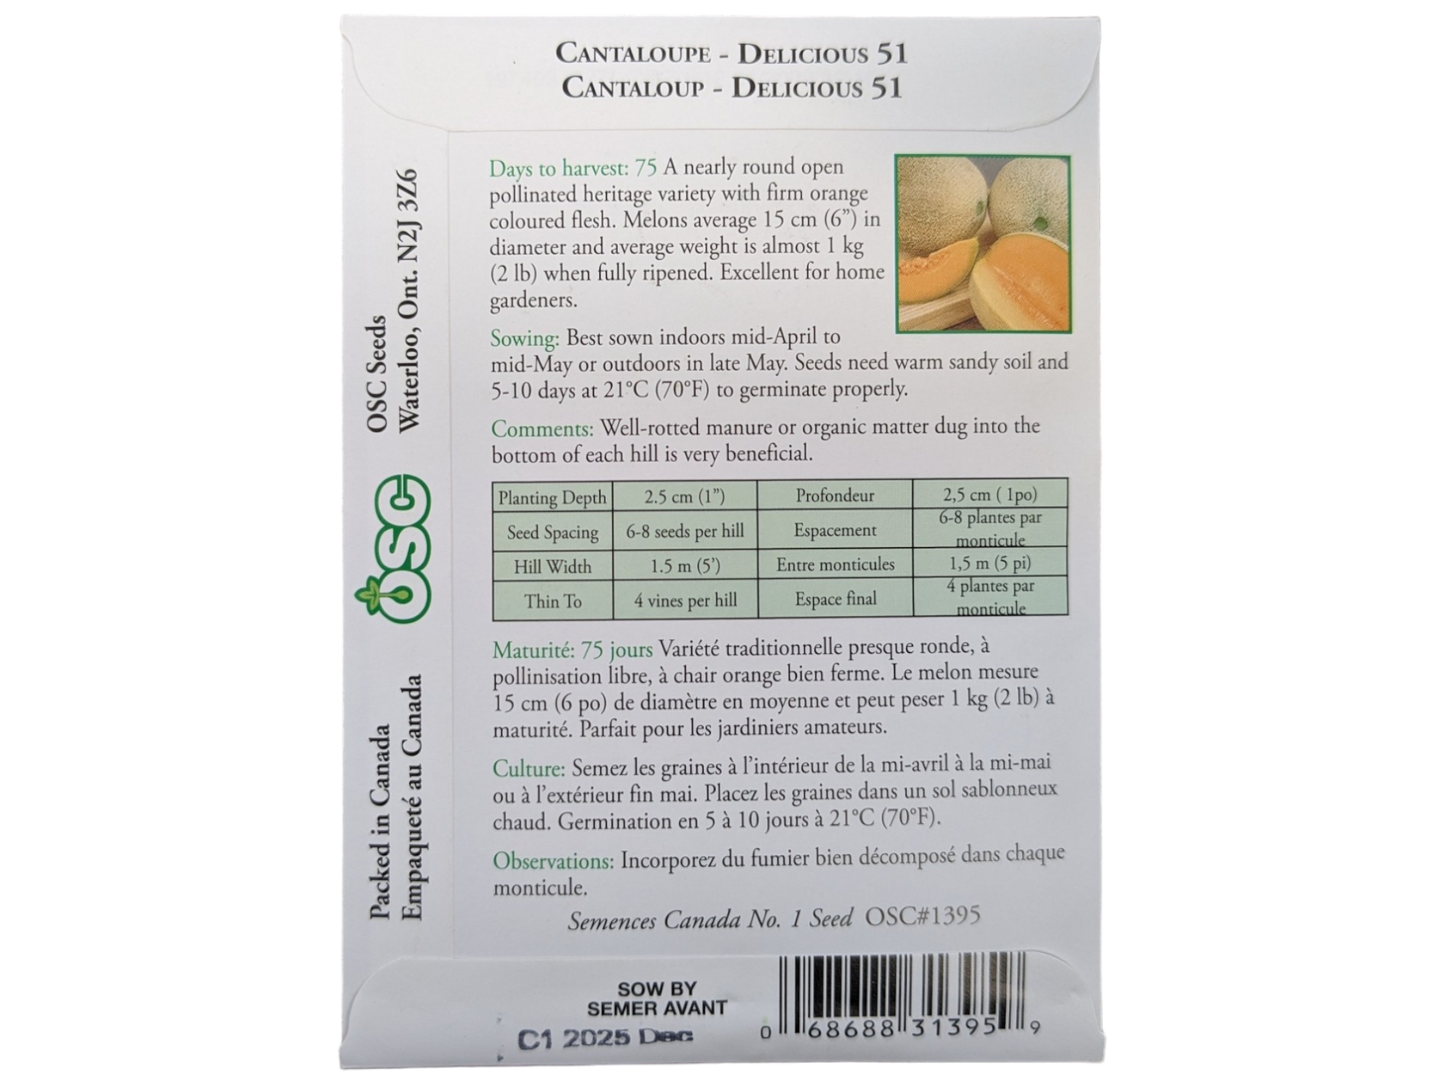 Cantaloupe Delicious 51